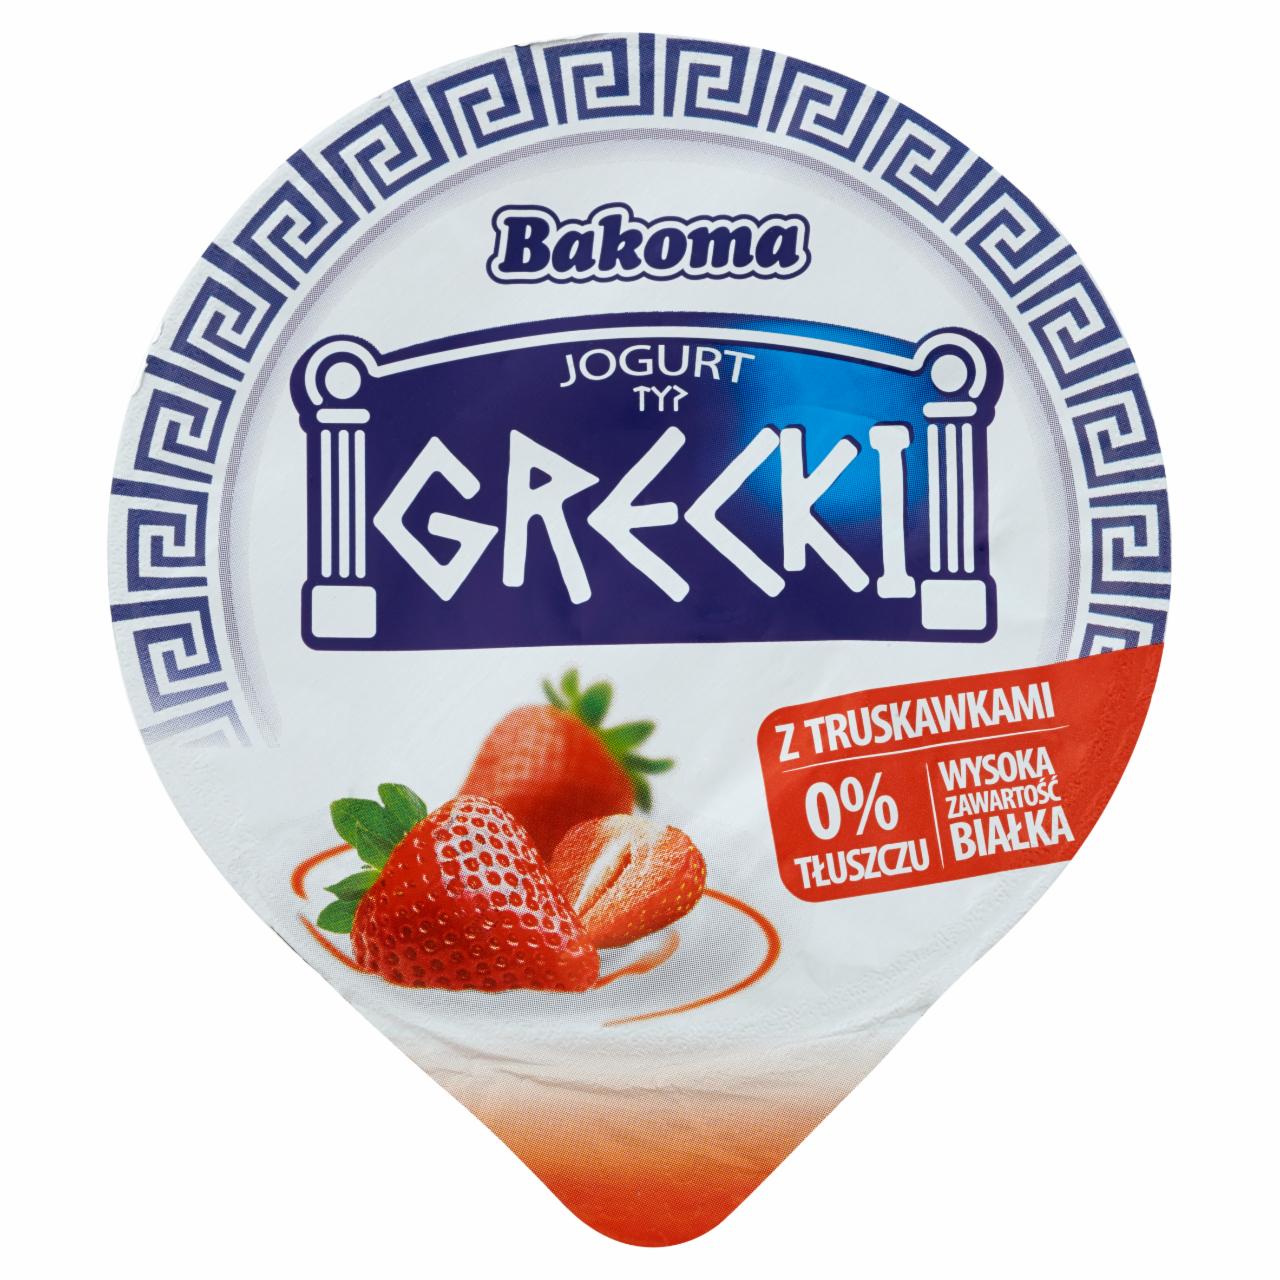 Zdjęcia - Bakoma Jogurt typ grecki z truskawkami 140 g